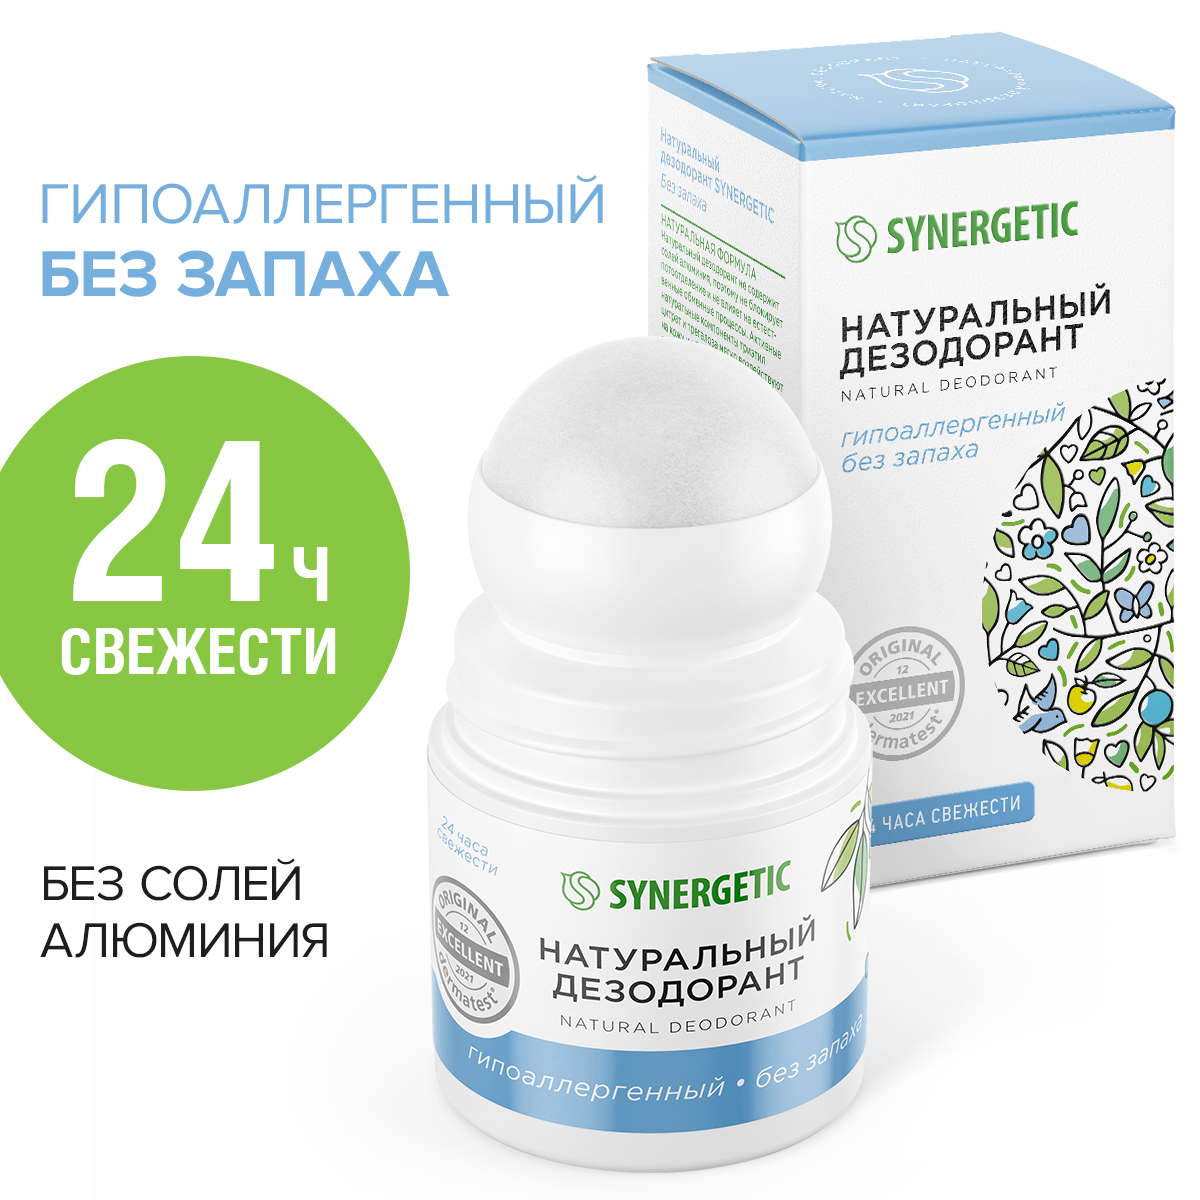 Натуральный дезодорант SYNERGETIC без запаха натуральный дезодорант synergetic без запаха 50 мл 2 шт